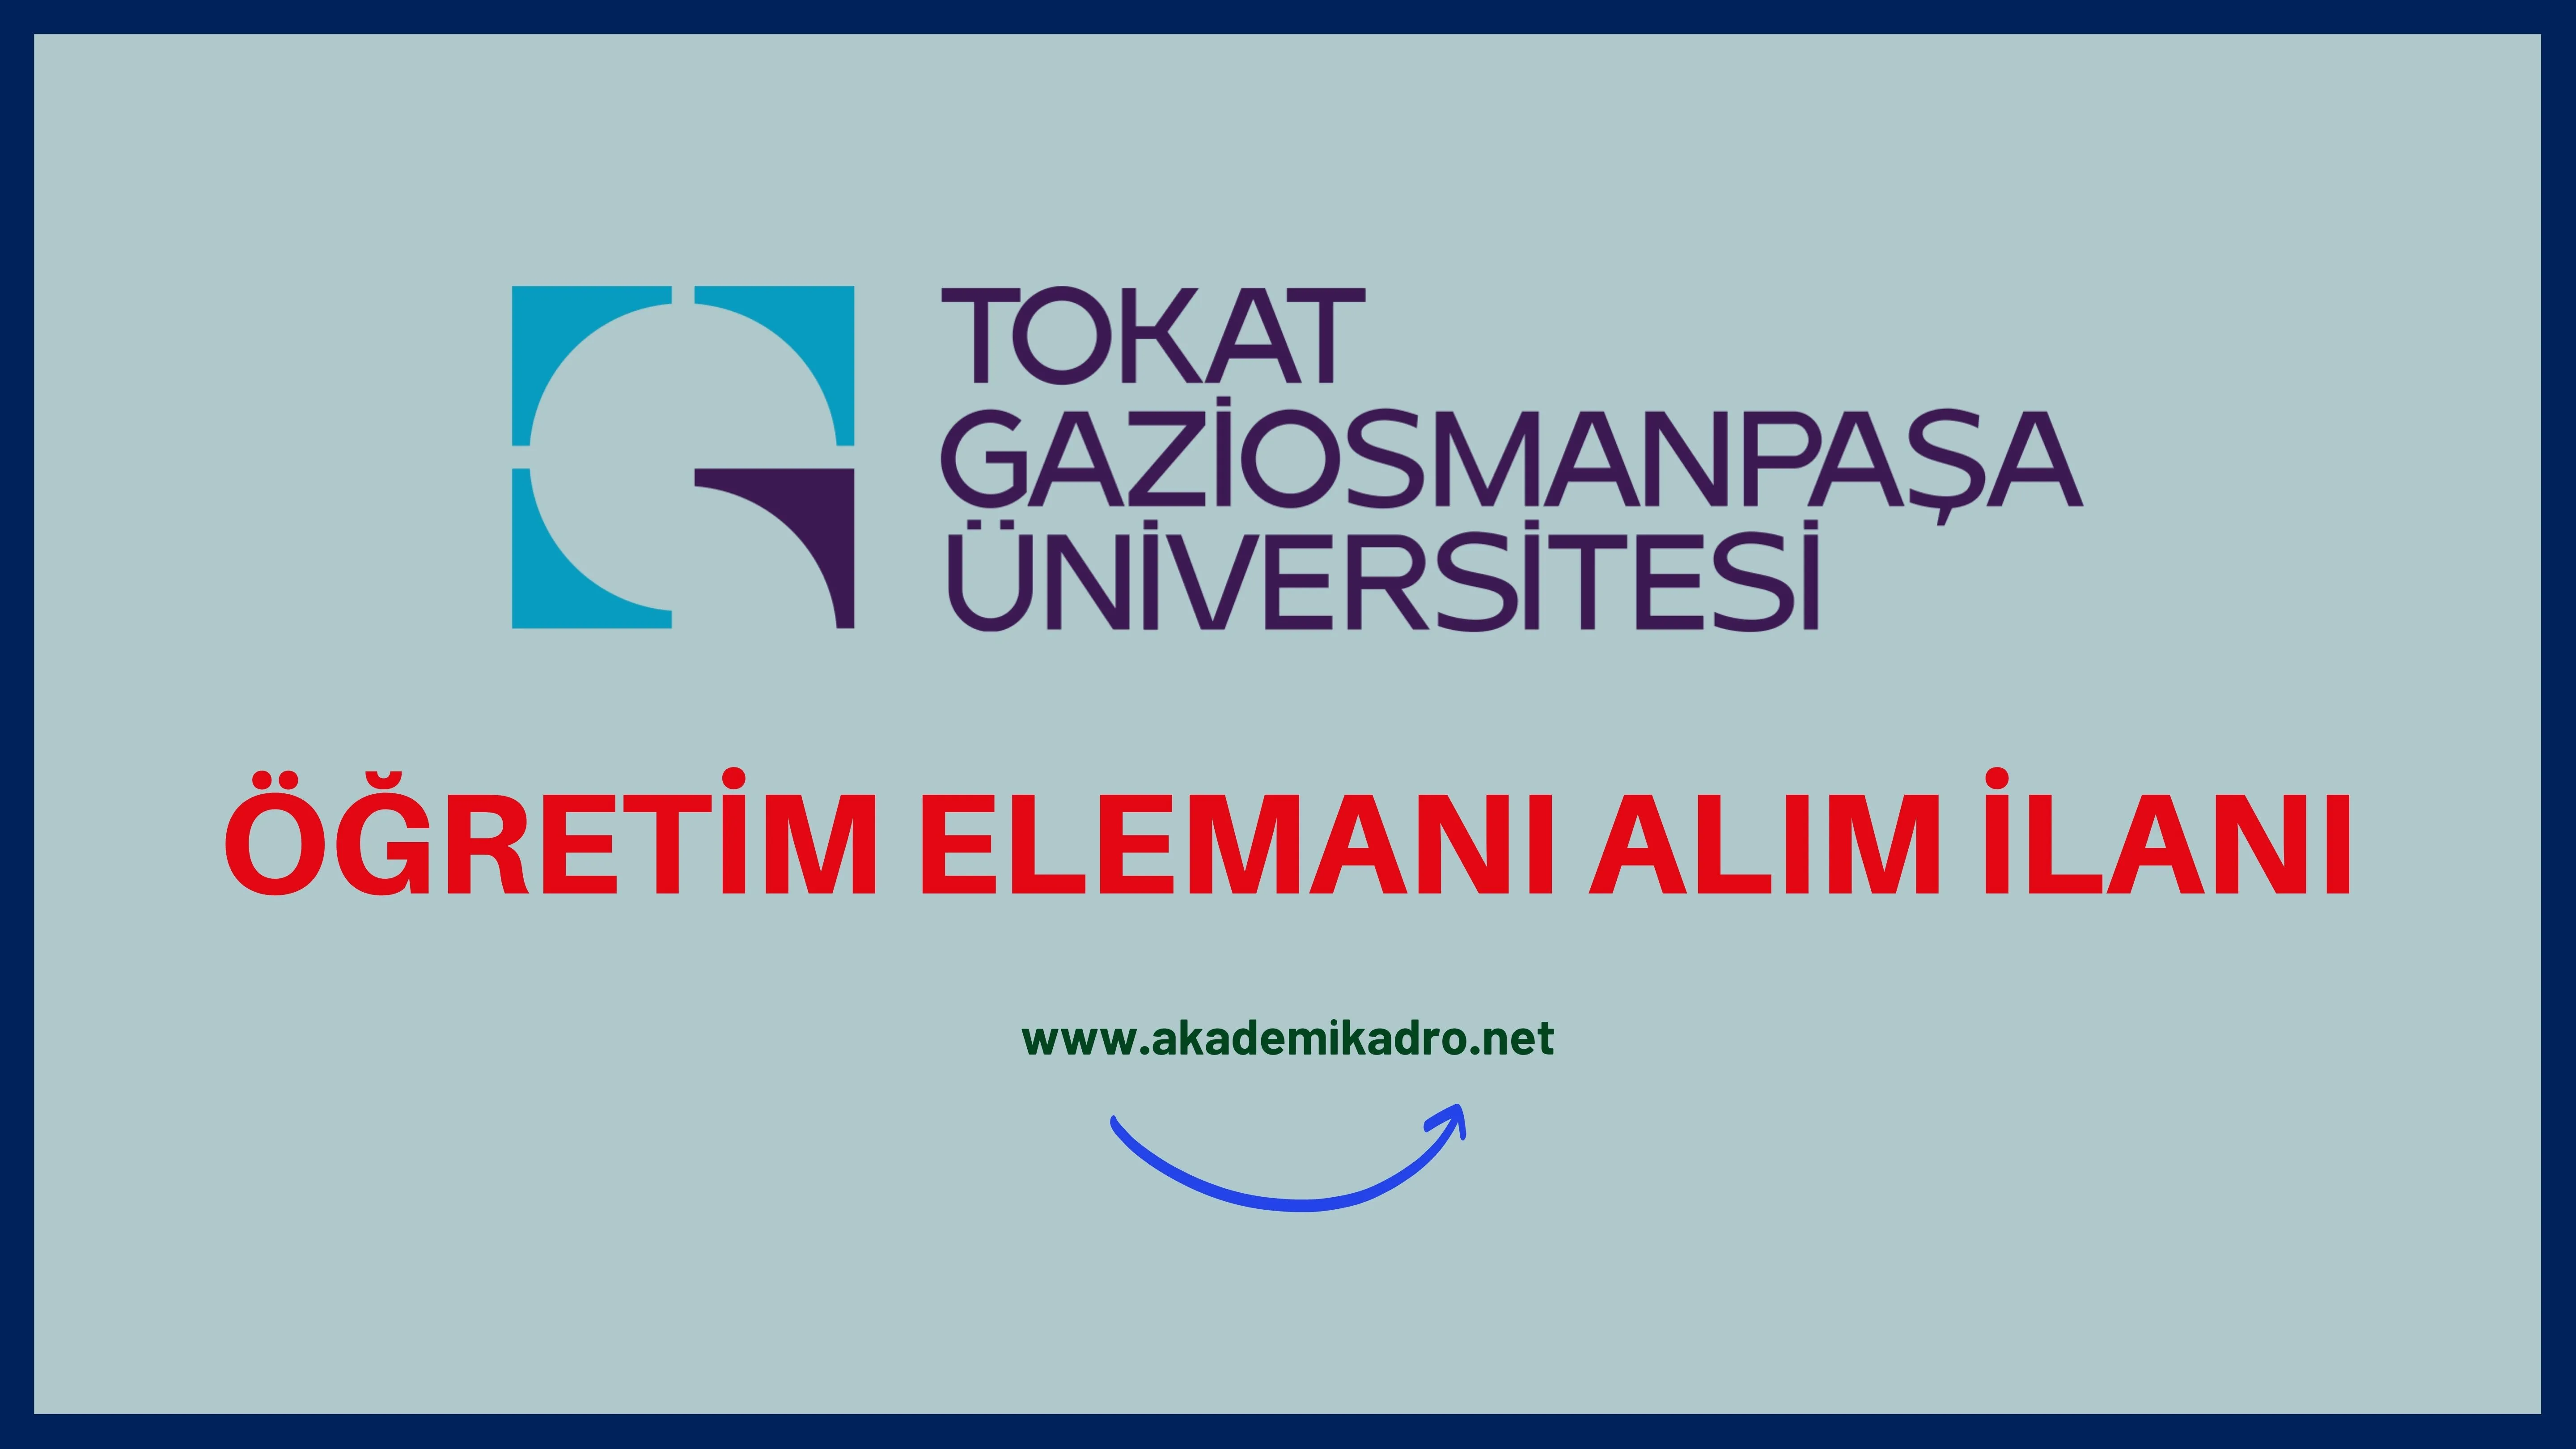 Tokat Gaziosmanpaşa Üniversitesi 41 Öğretim üyesi, 8 Araştırma görevlisi ve 3 Öğretim görevlisi alacaktır. Son başvuru tarihi 16 Ocak 2023